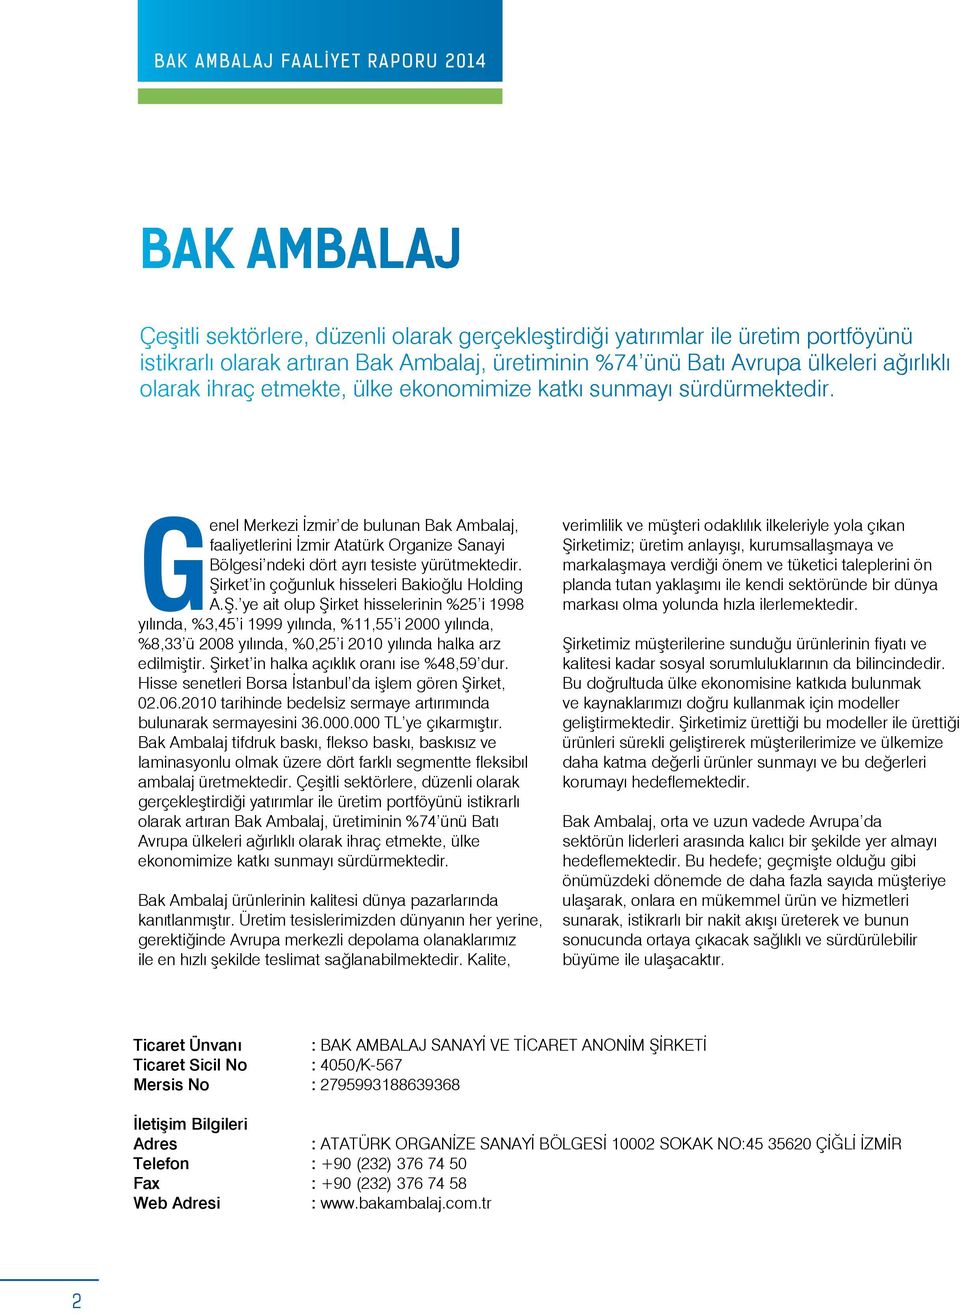 Genel Merkezi İzmir de bulunan Bak Ambalaj, faaliyetlerini İzmir Atatürk Organize Sanayi Bölgesi ndeki dört ayrı tesiste yürütmektedir. Şi